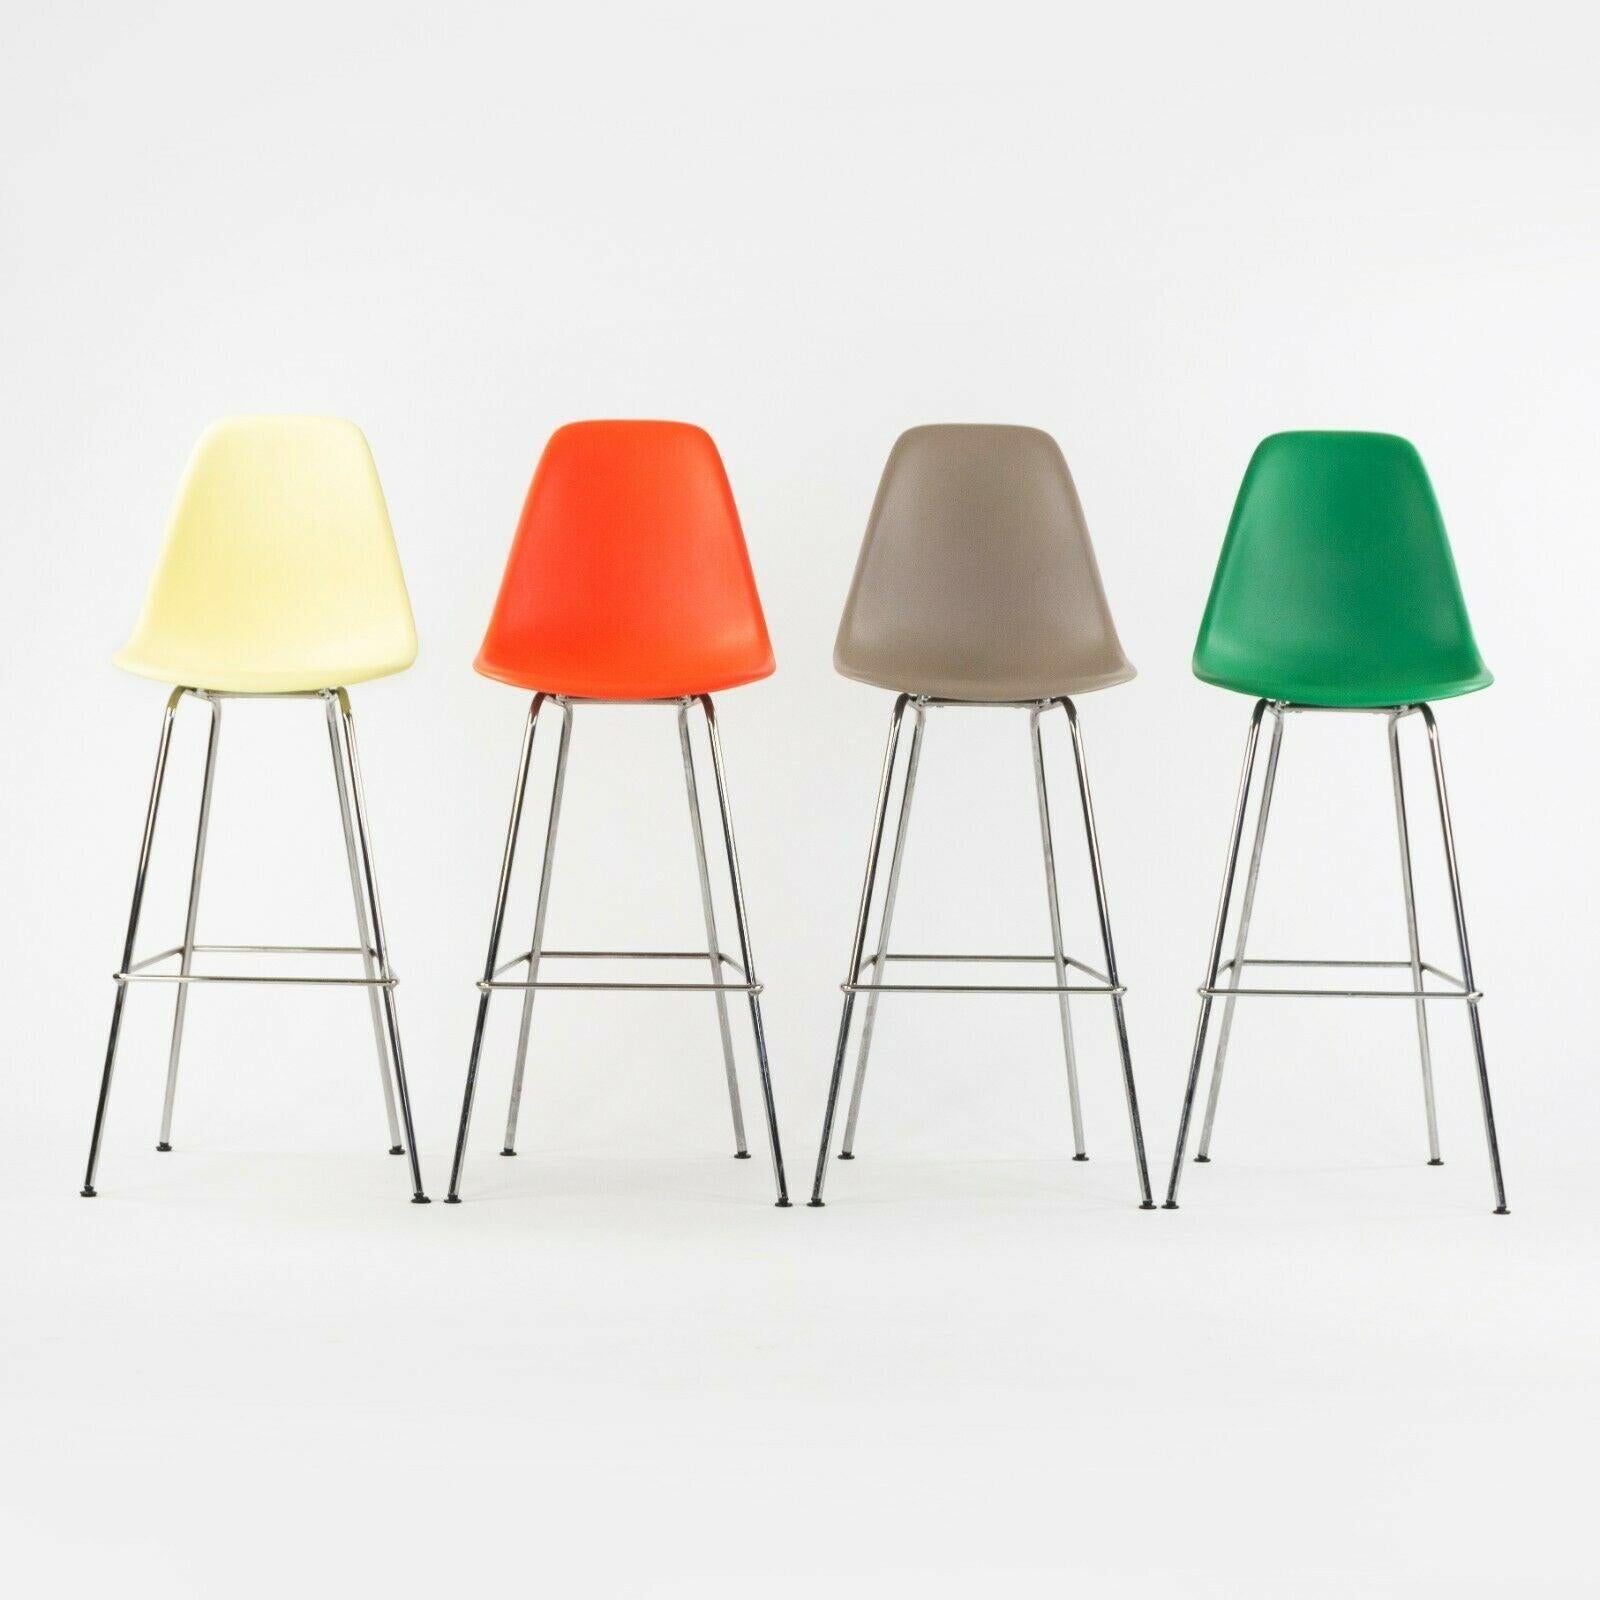 Nous proposons à la vente une chaise à coque moulée Eames d'Herman Miller, produite en 2020, avec une base de tabouret de bar. Cet exemplaire n'a pas été utilisé à la maison ou au bureau et présente peu ou pas d'usure notable. 

Le tabouret mesure